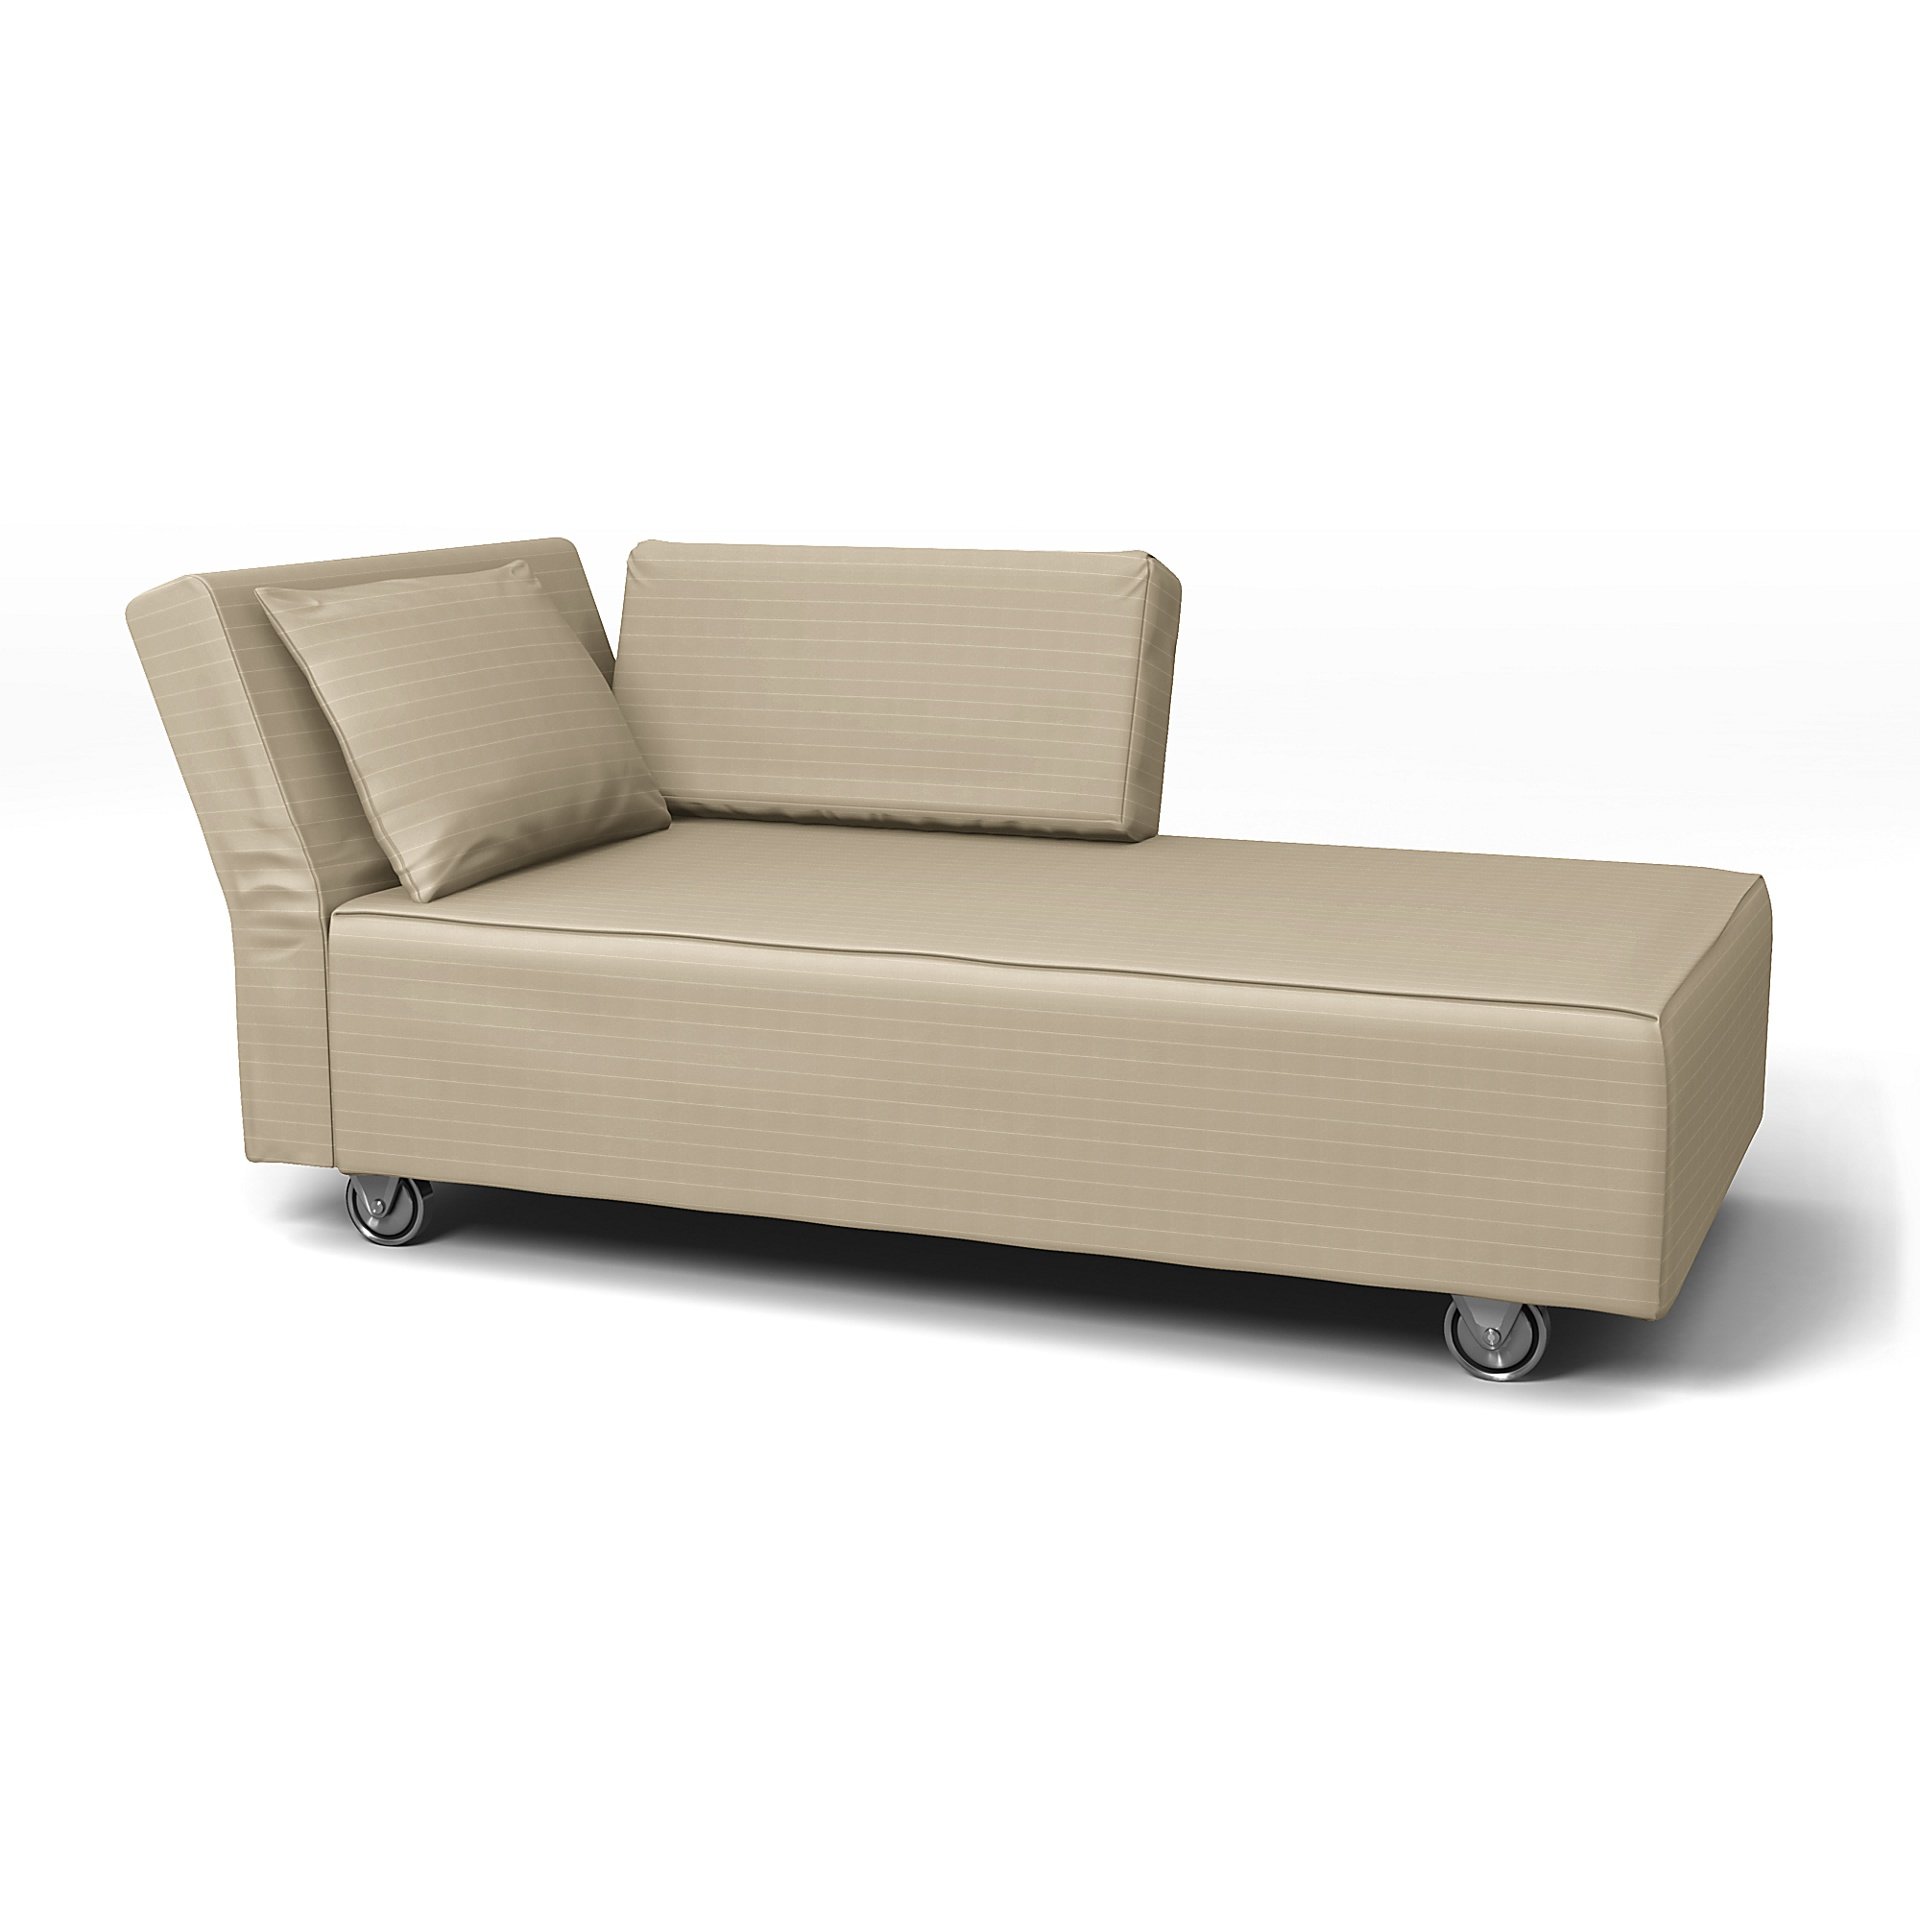 IKEA - Falsterbo Chaise with Left Armrest Cover, Oyster, Velvet - Bemz